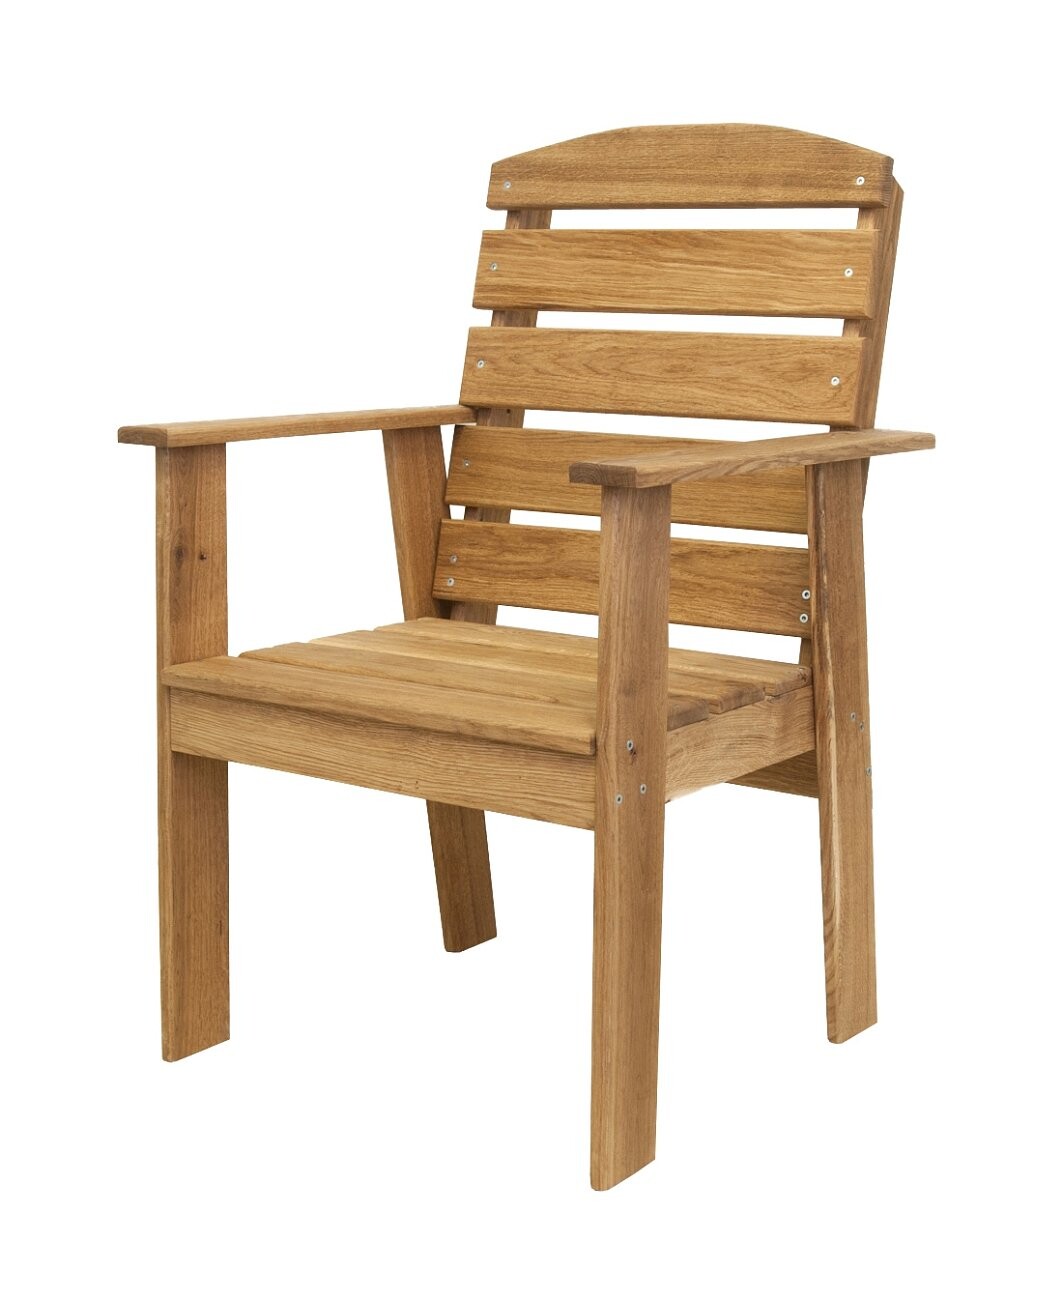 стул с подлокотниками из дерева своими руками